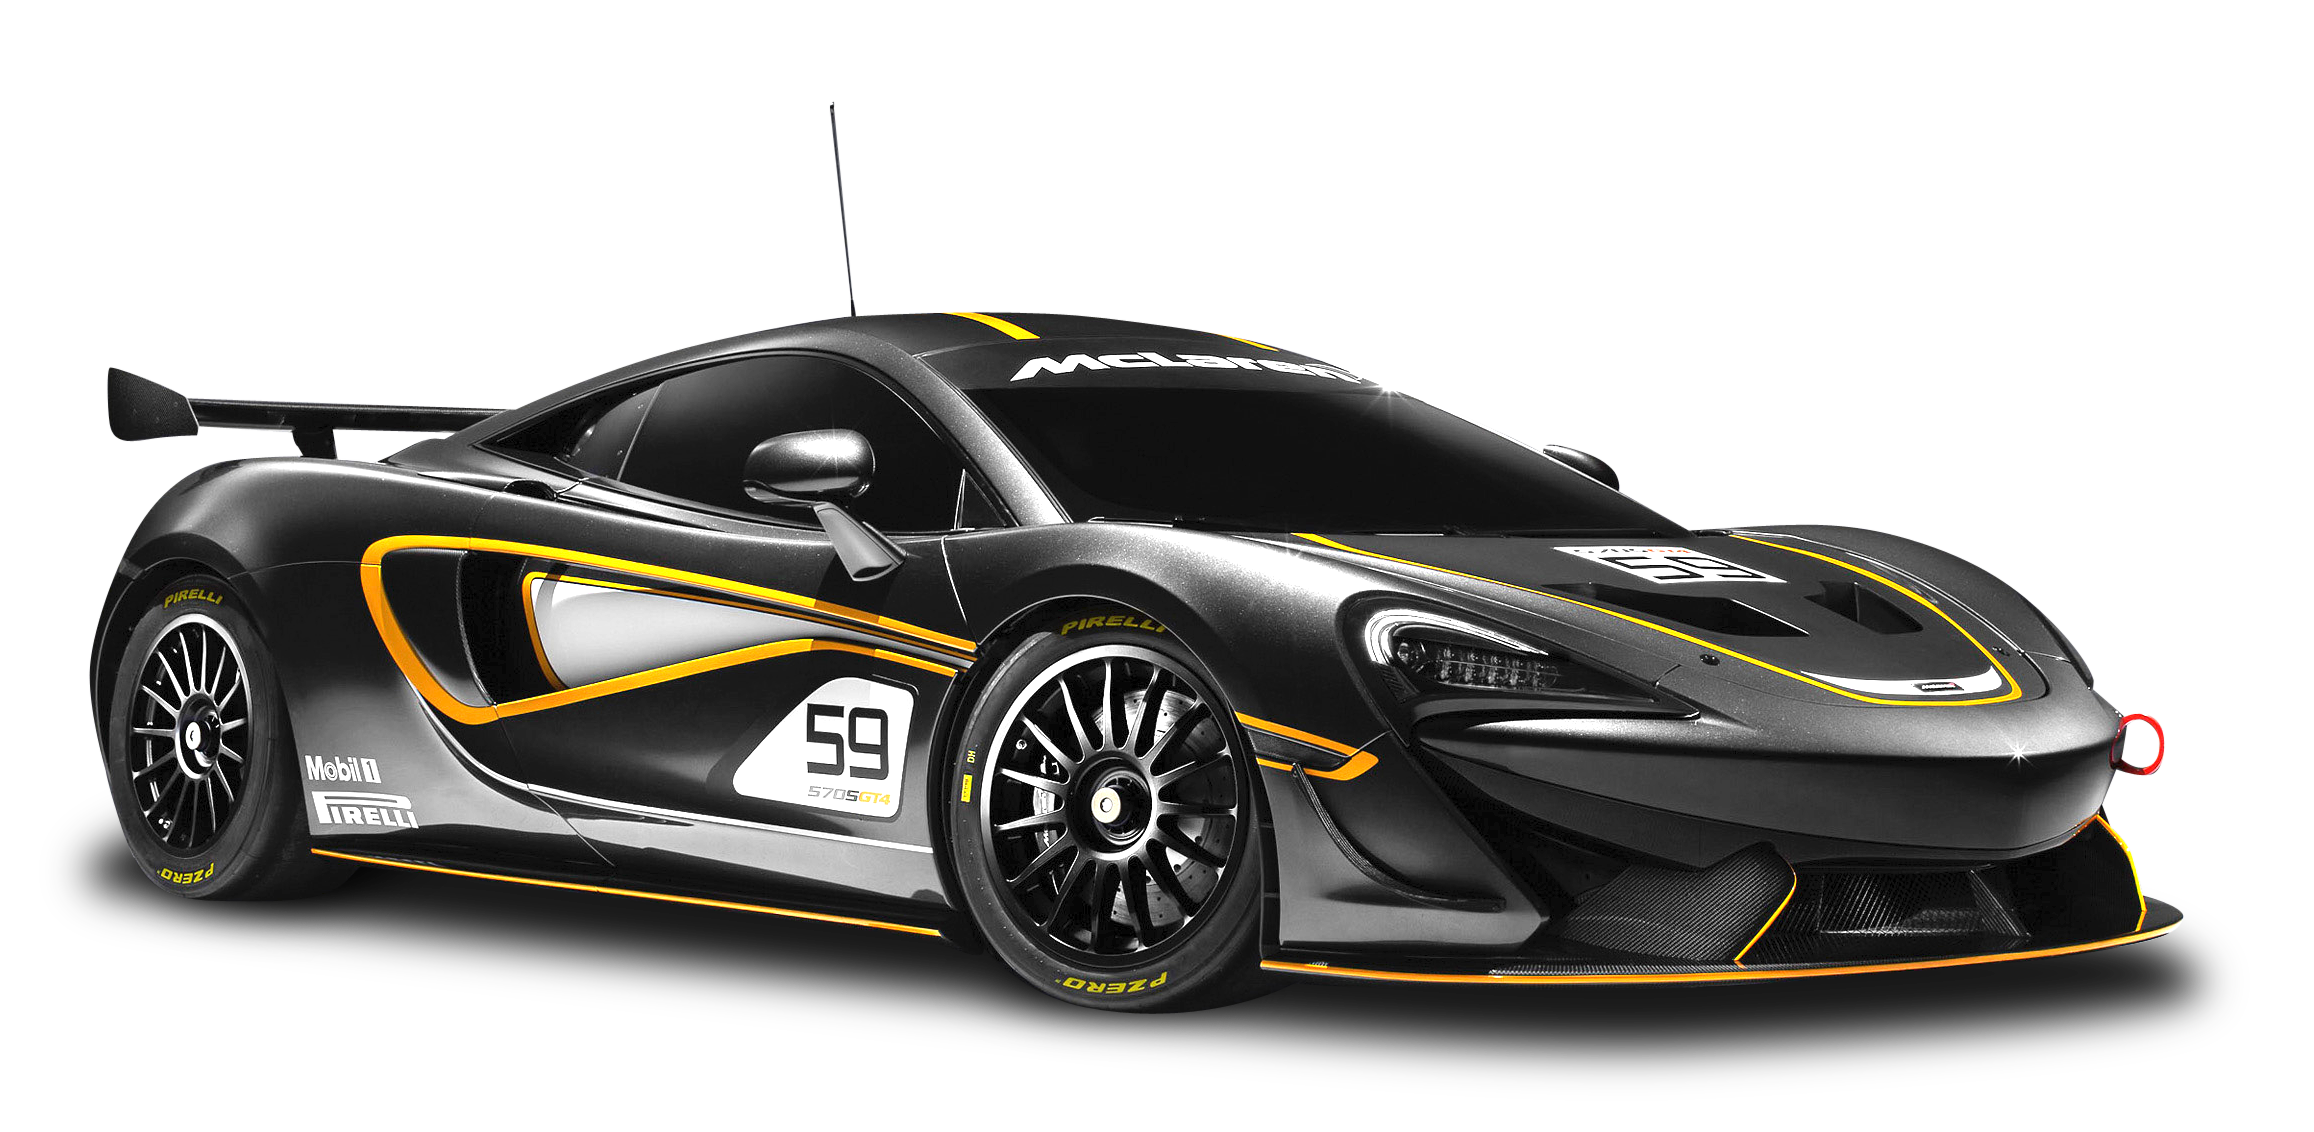 Black McLaren 570S GT4 Racing Car